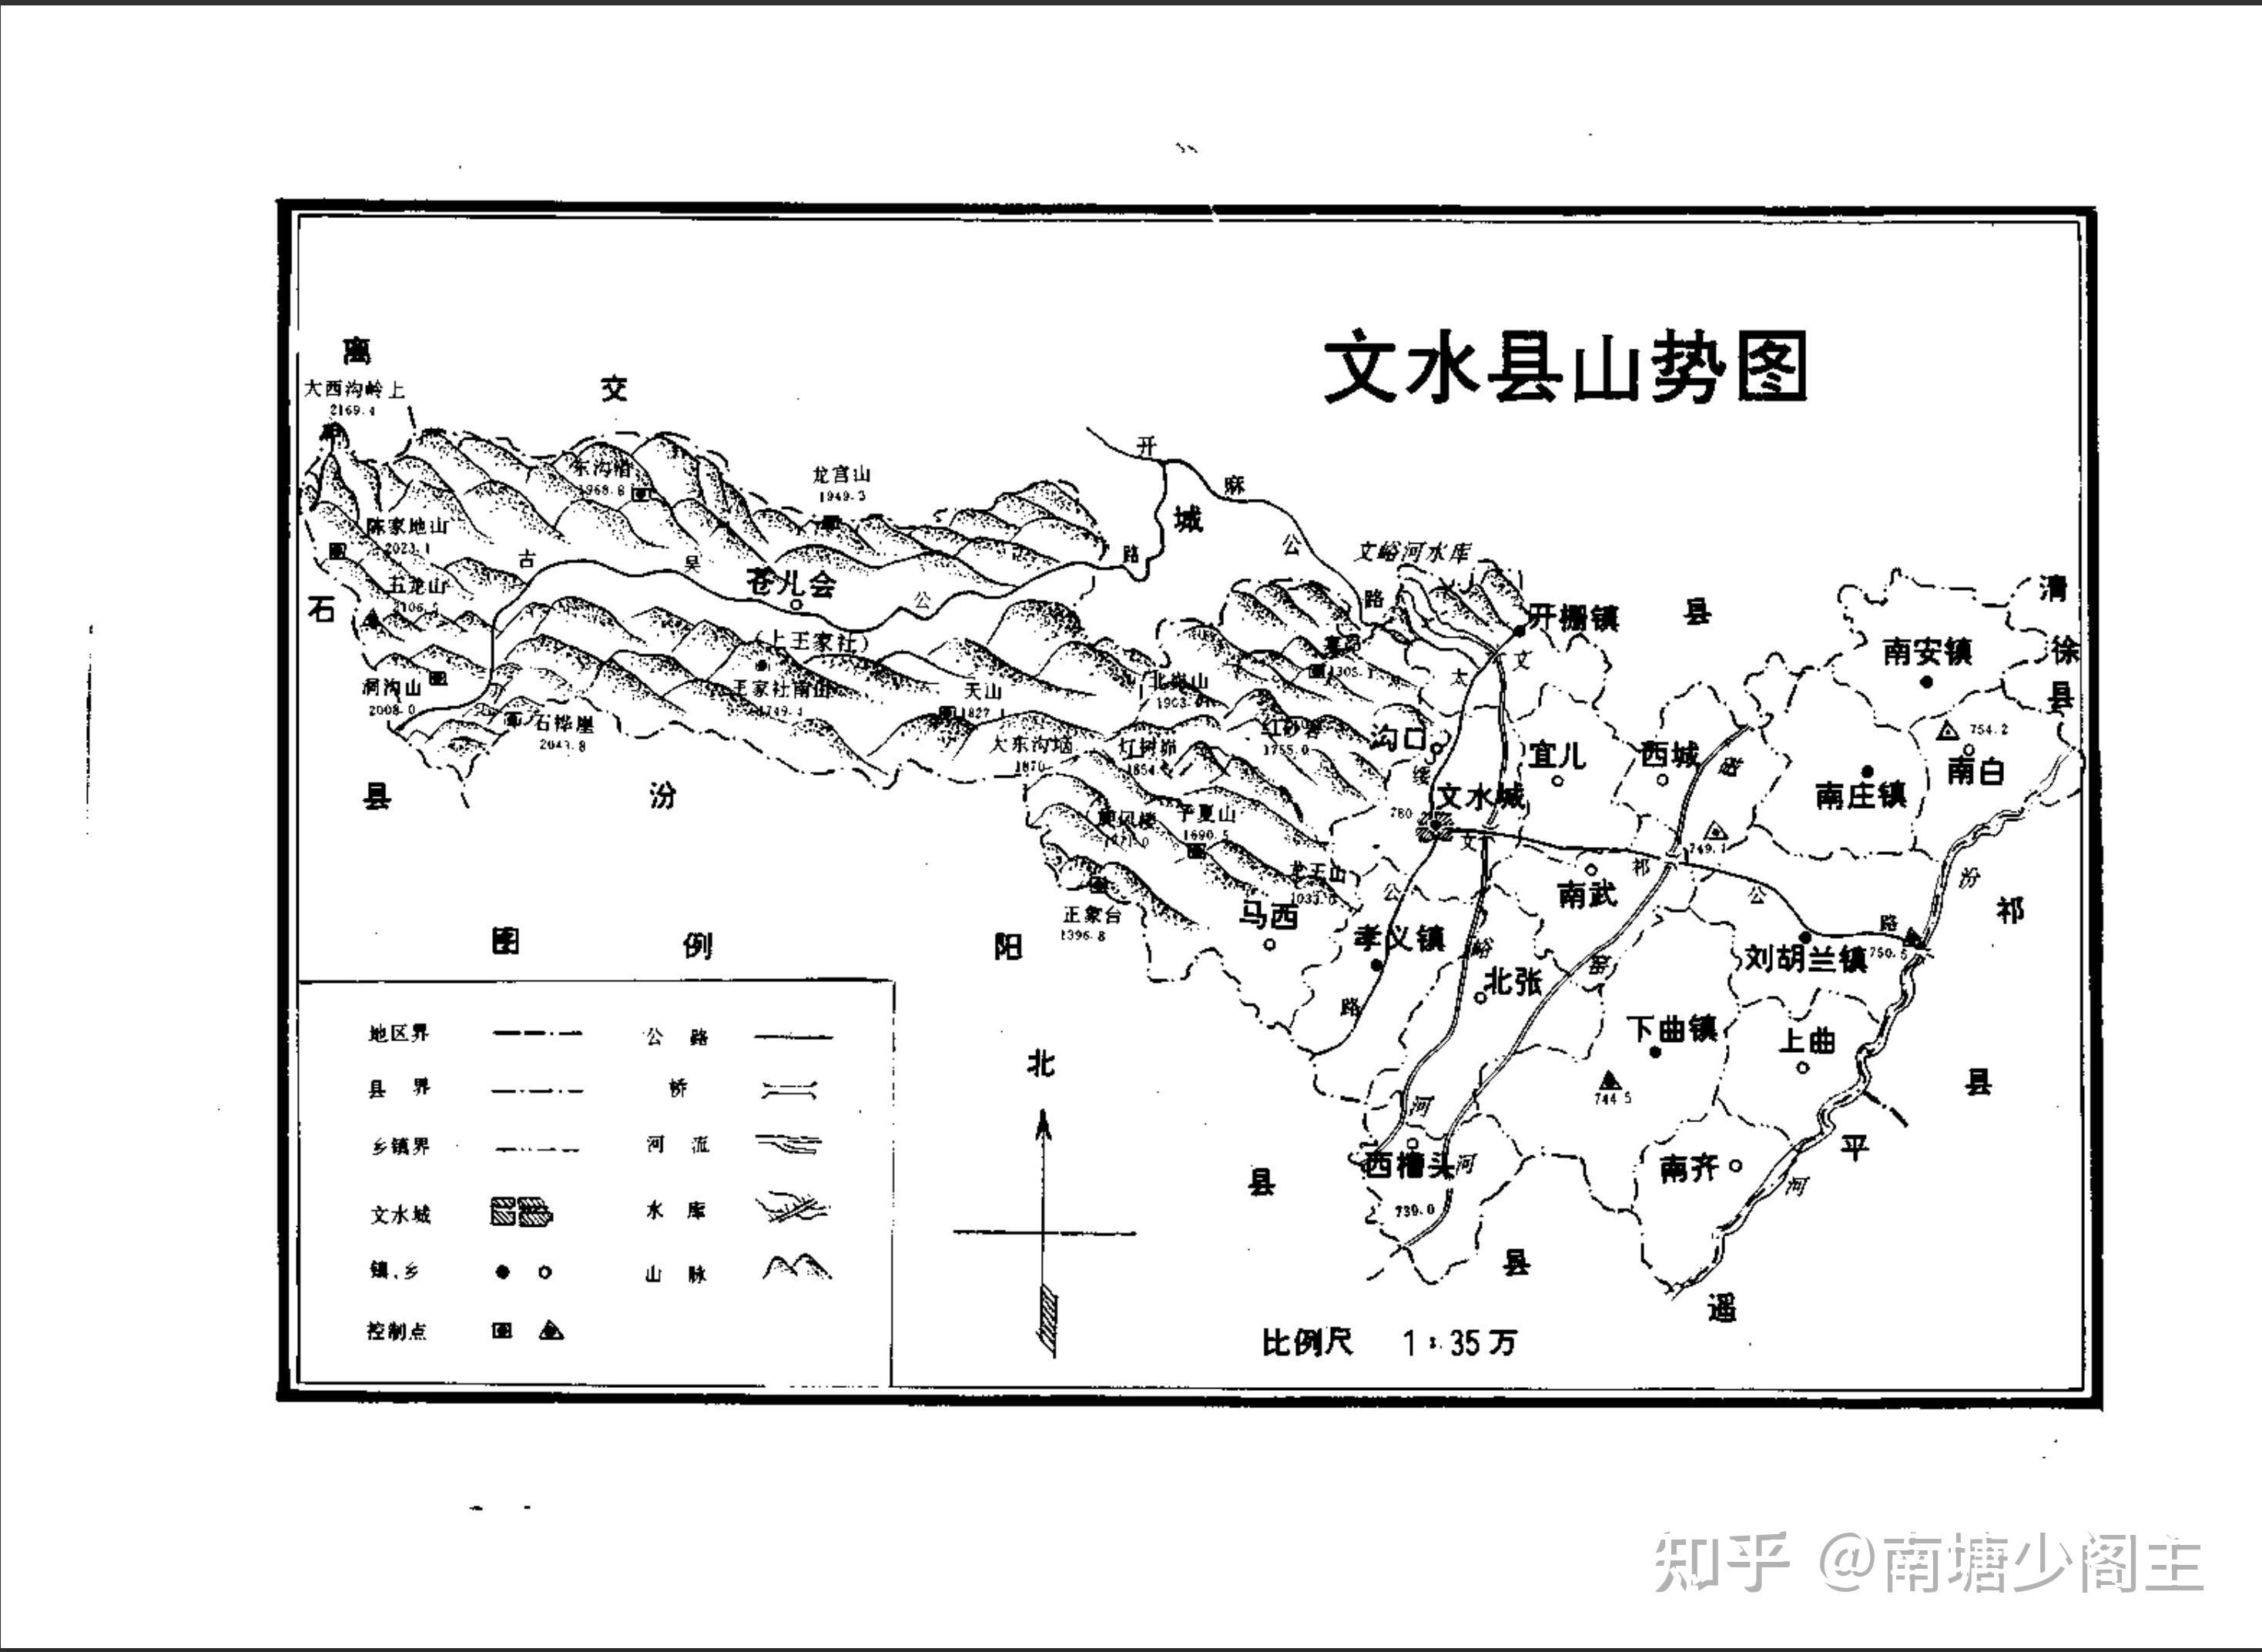 文水县地势图,以上三图皆来源于1994年版《文水县志》1973年,苍儿会村